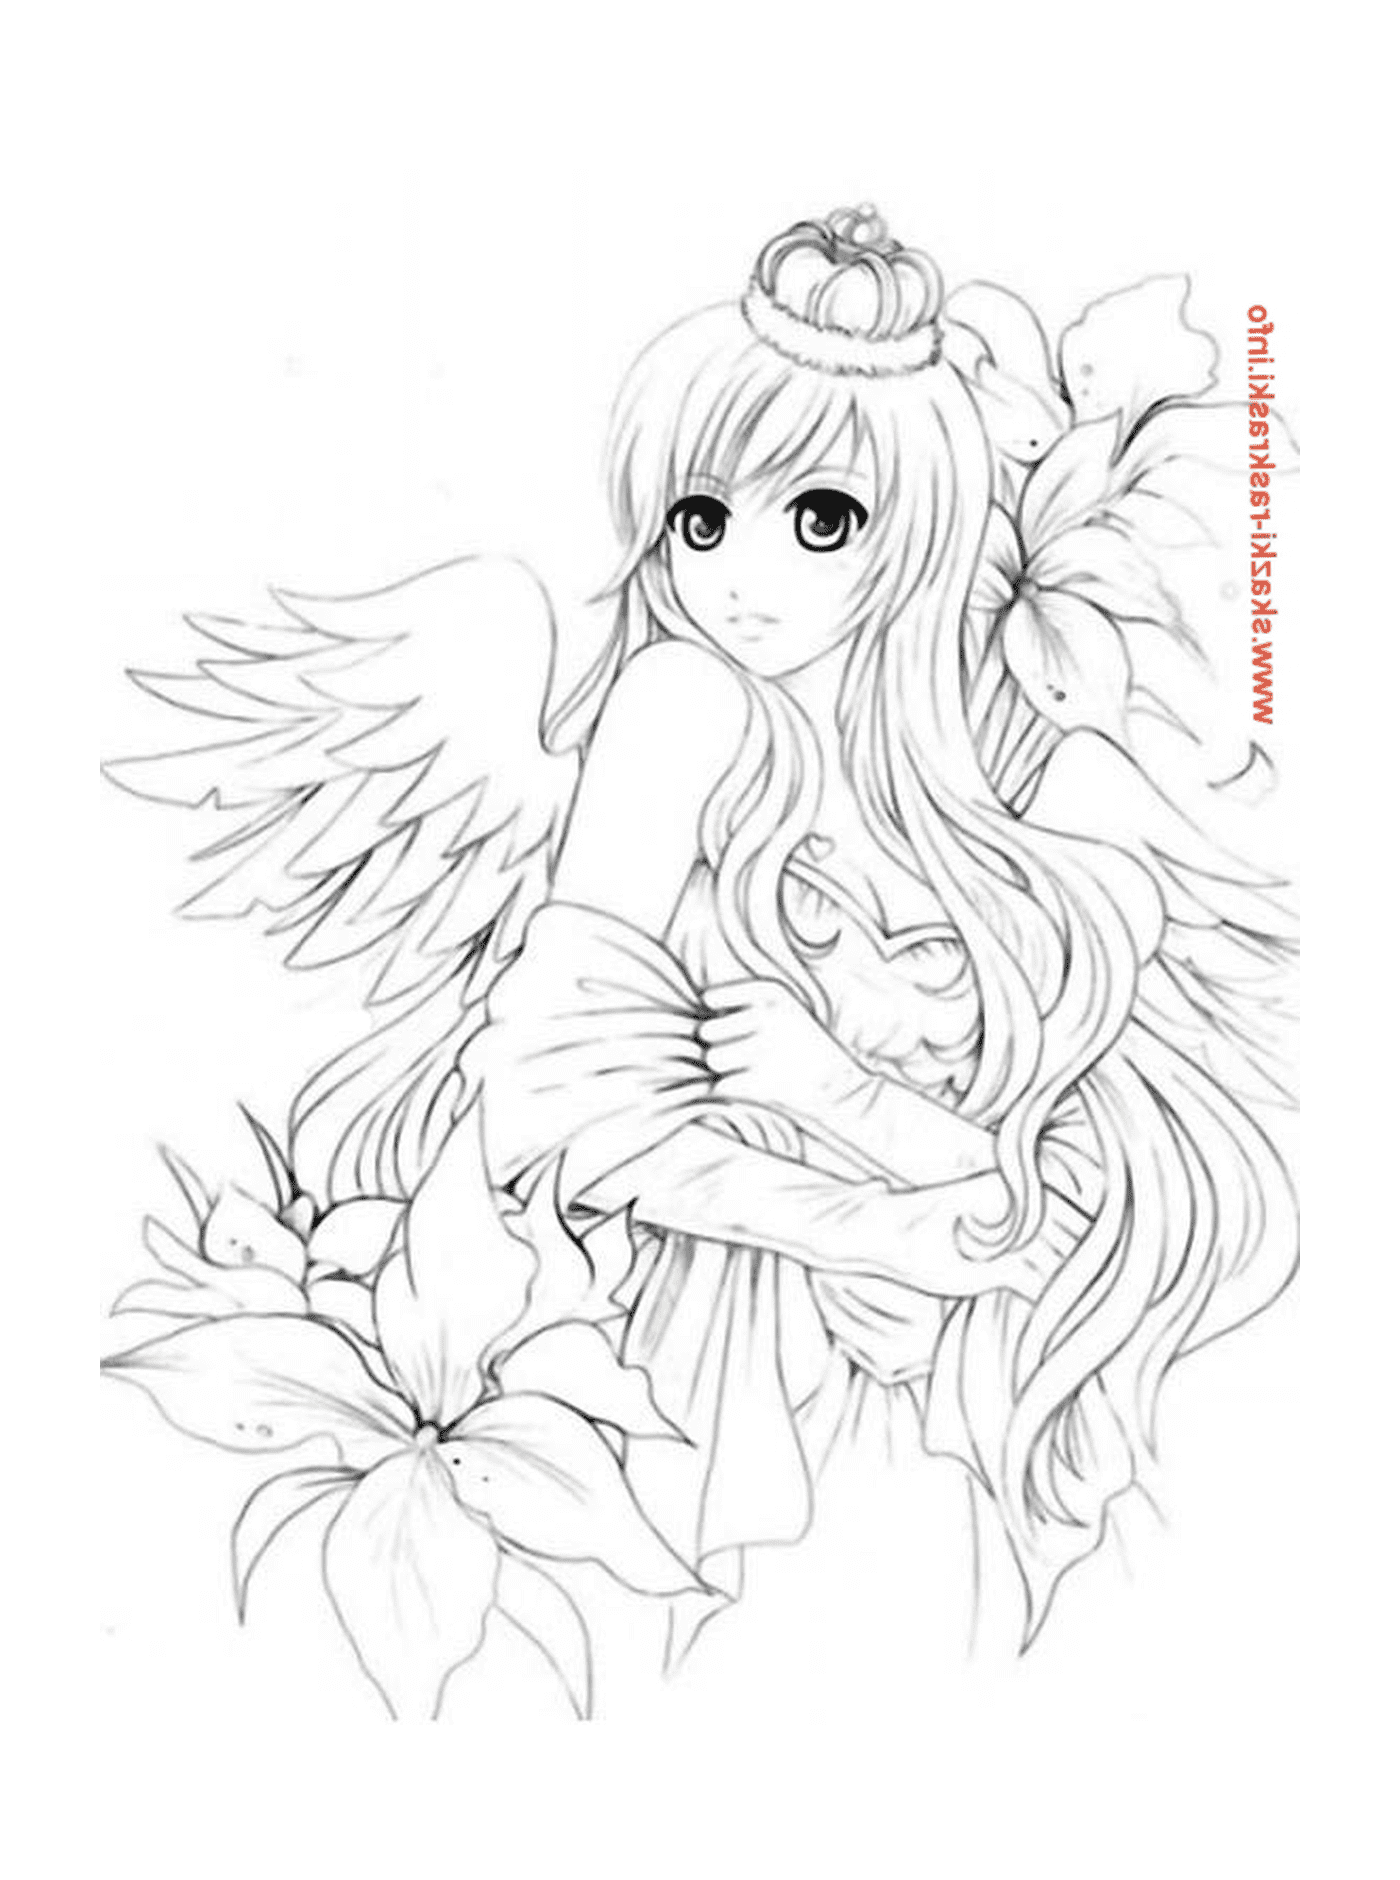   Un ange avec de longs cheveux blancs et une fleur 